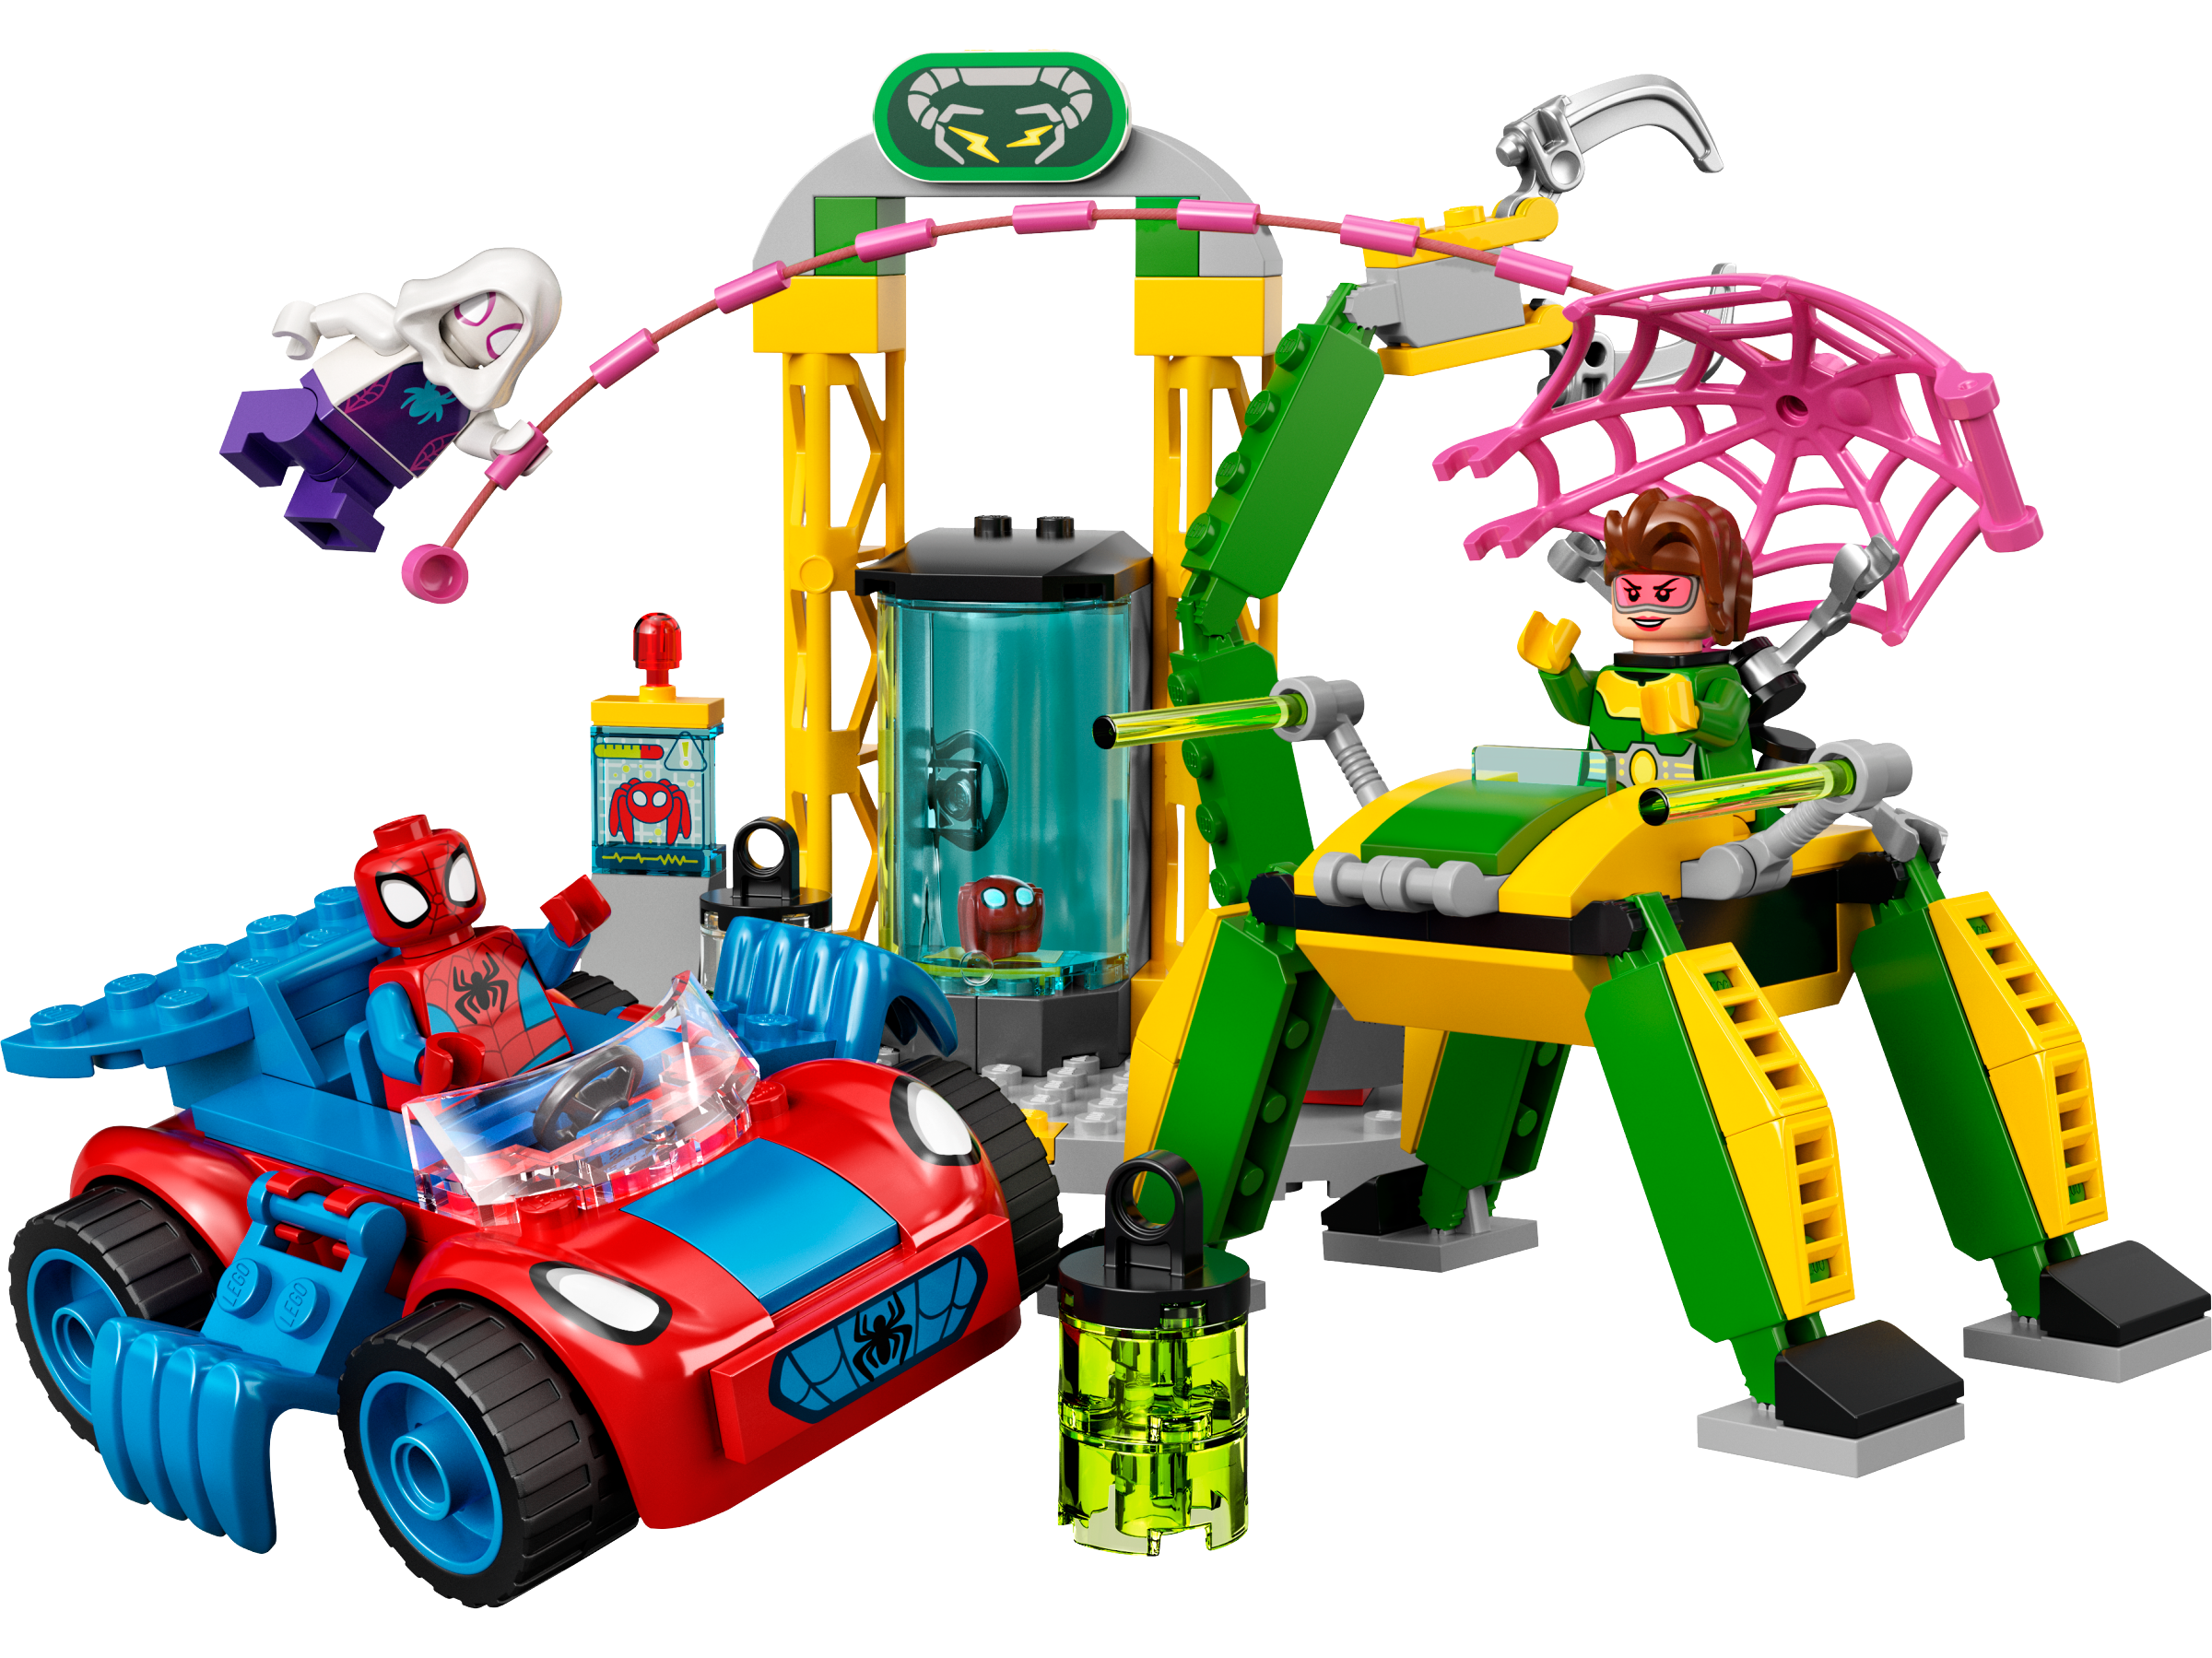 10783 LEGO Spidey Spider-Man i Doc Ocks Labb - LEGO Spidey - LEGO